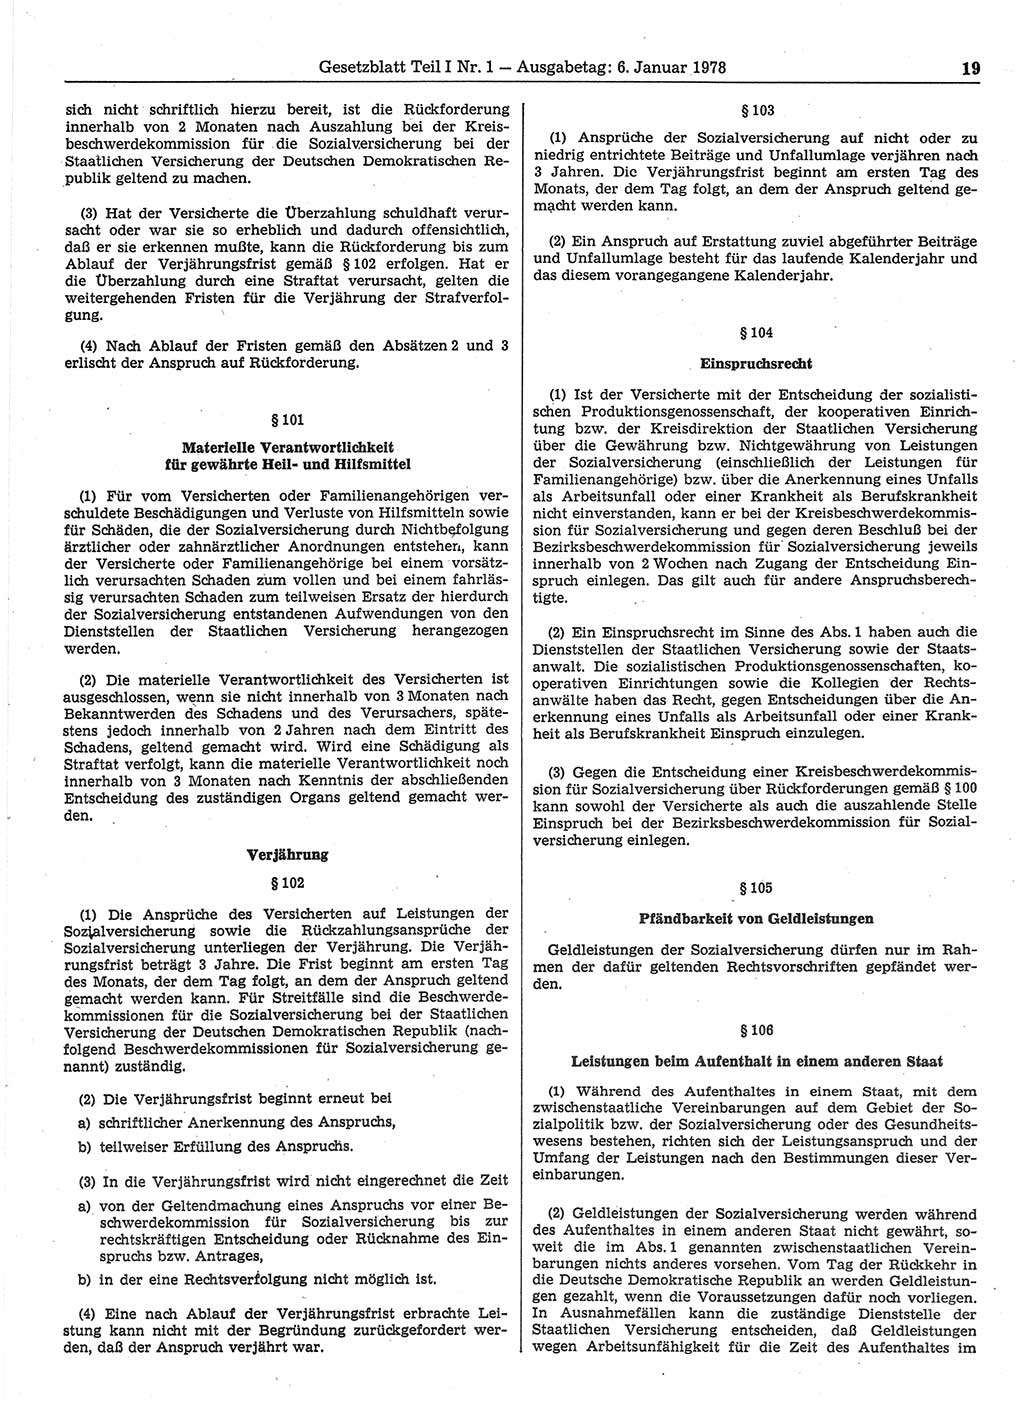 Gesetzblatt (GBl.) der Deutschen Demokratischen Republik (DDR) Teil Ⅰ 1978, Seite 19 (GBl. DDR Ⅰ 1978, S. 19)